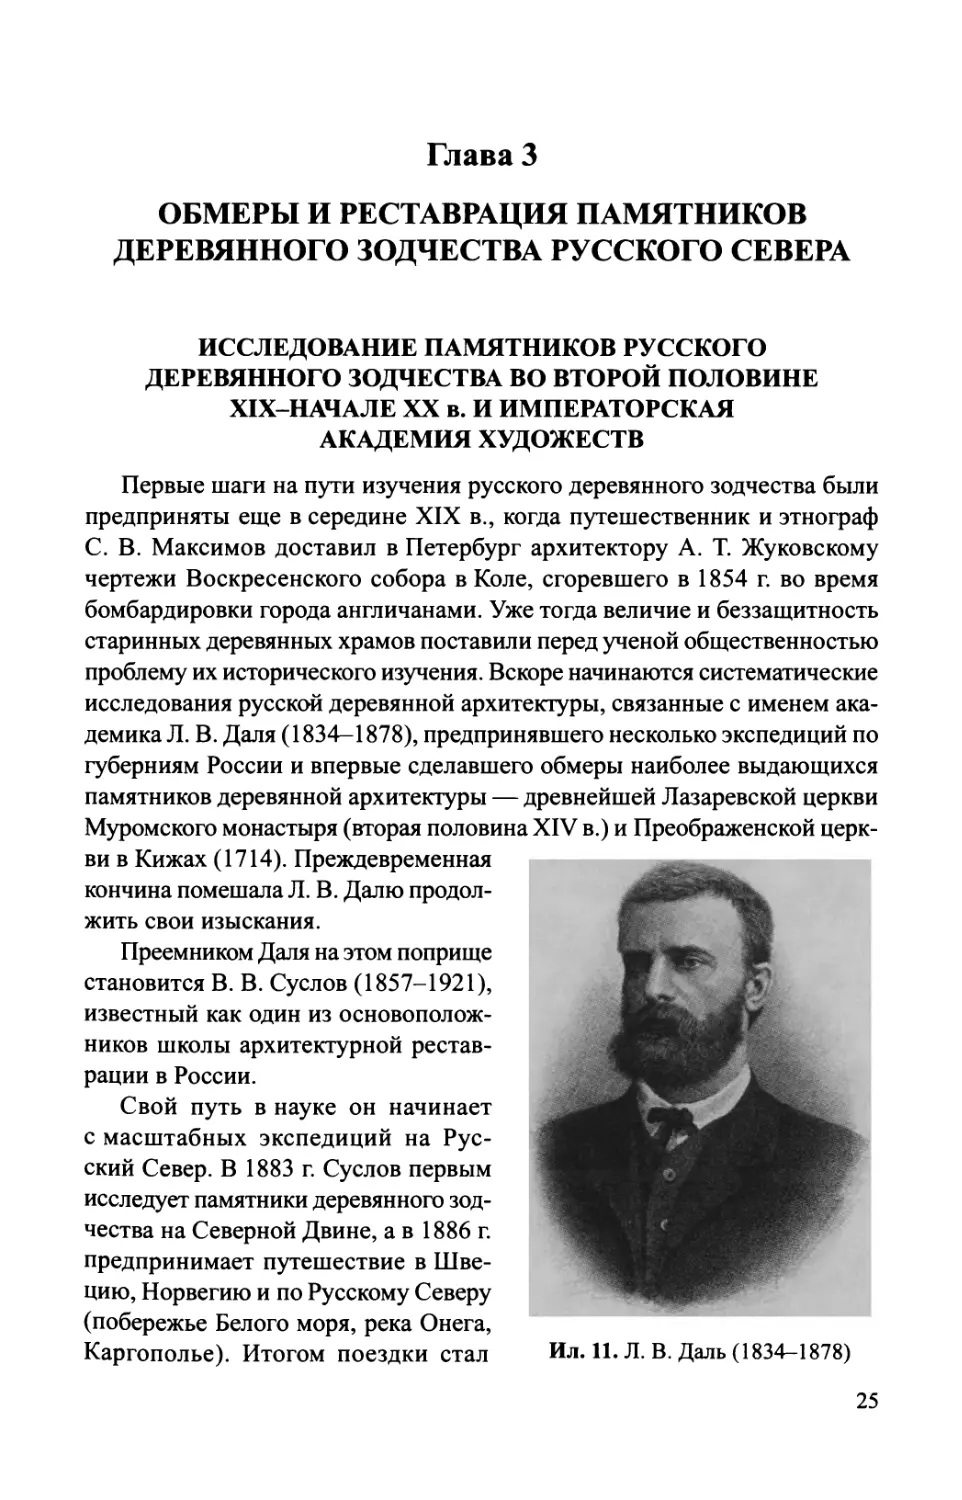 Глава 3. Обмеры и реставрация памятников деревянного зодчества Русского Севера